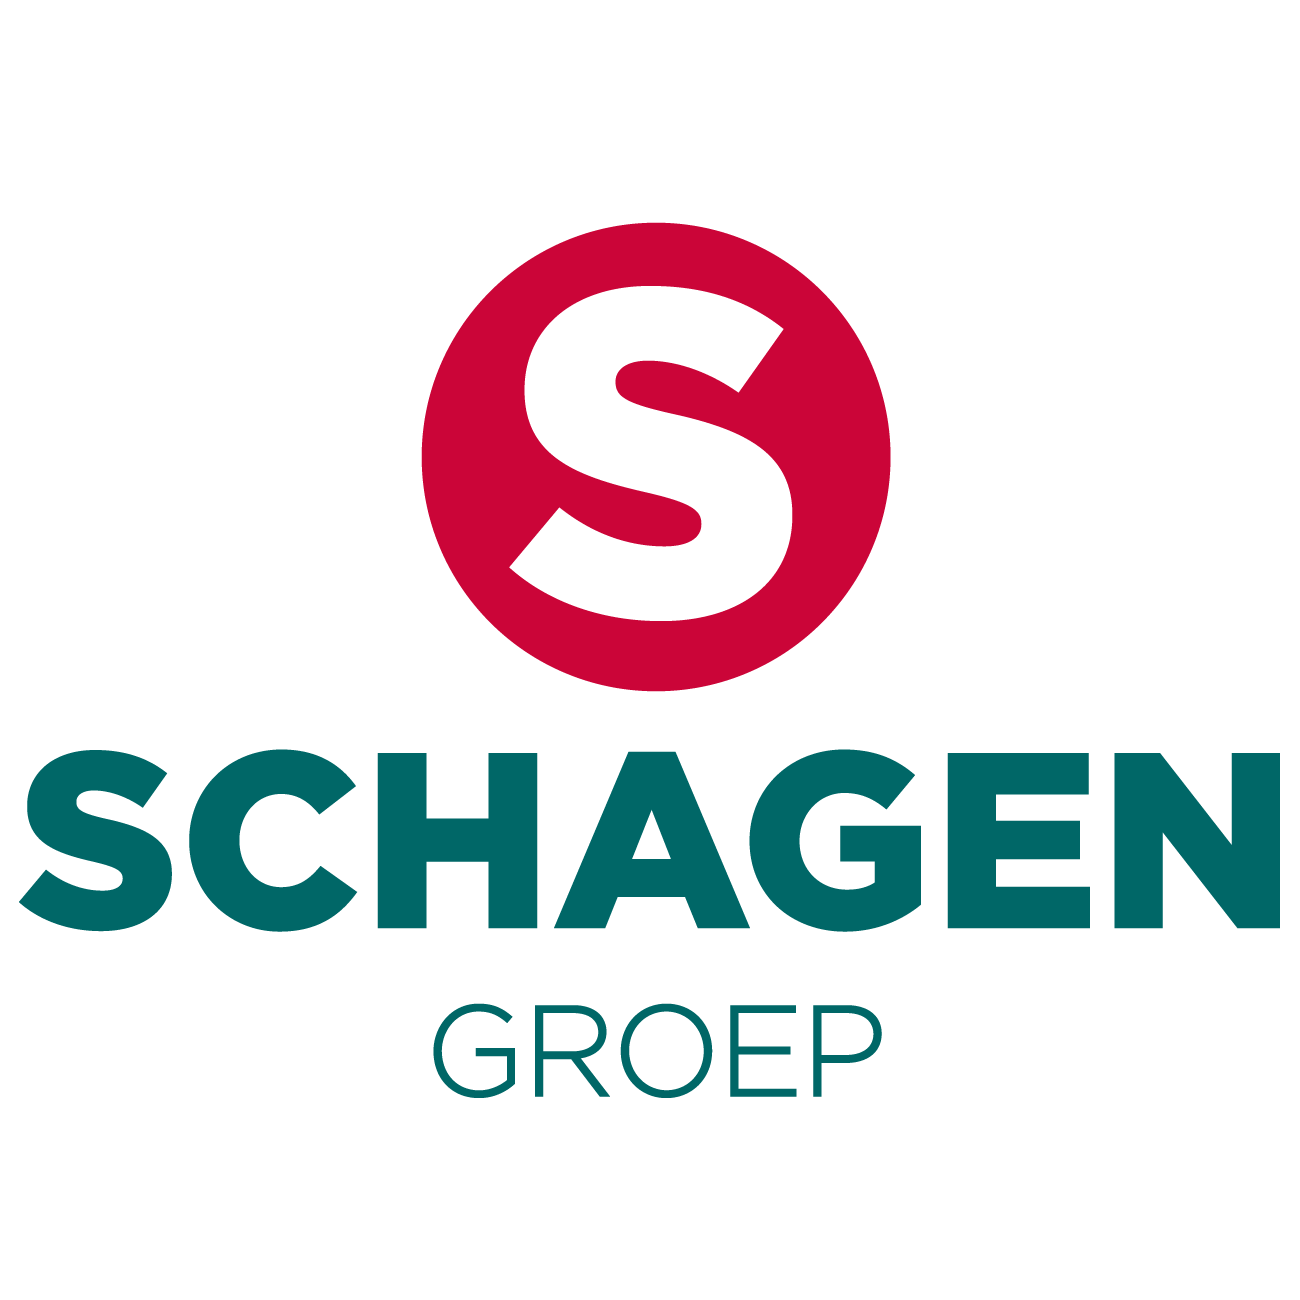 Schagen Groep